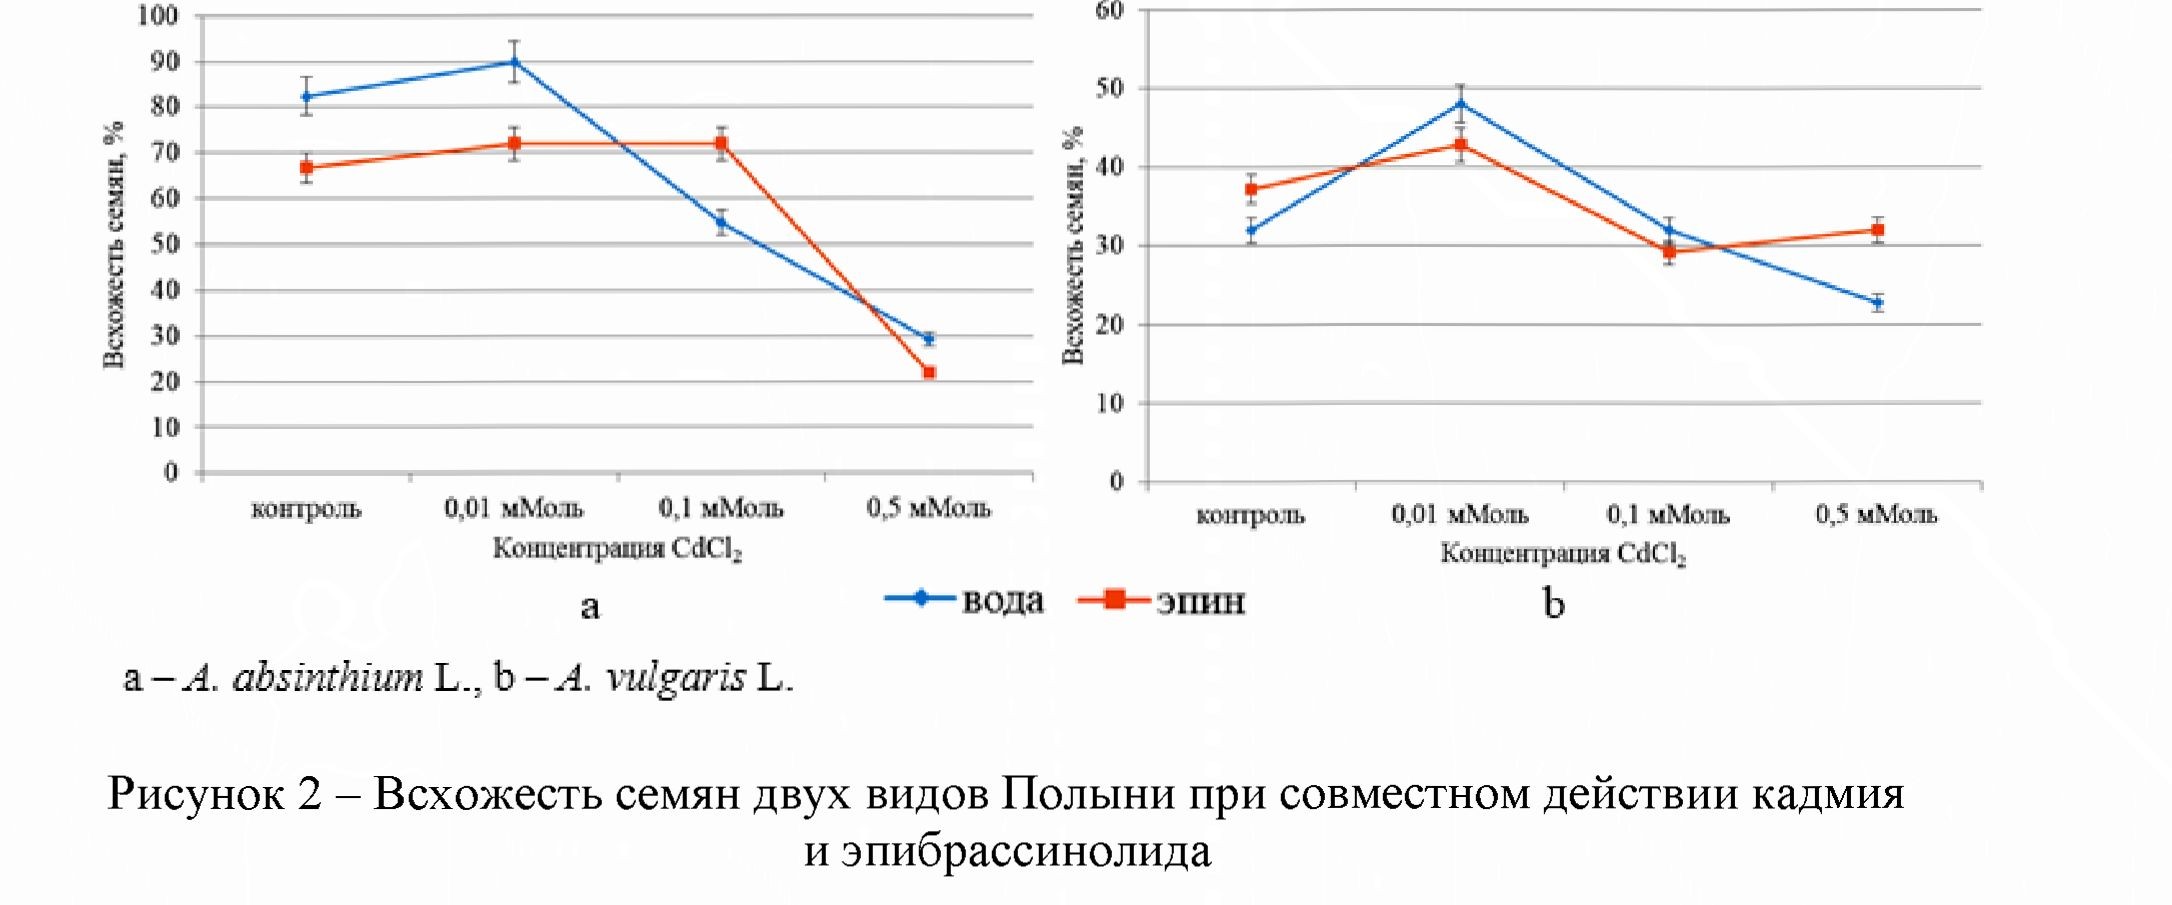 Совместное действие кадмия и эпибрассинолида на всхожесть и ростовые показатели семян двух видов полыней